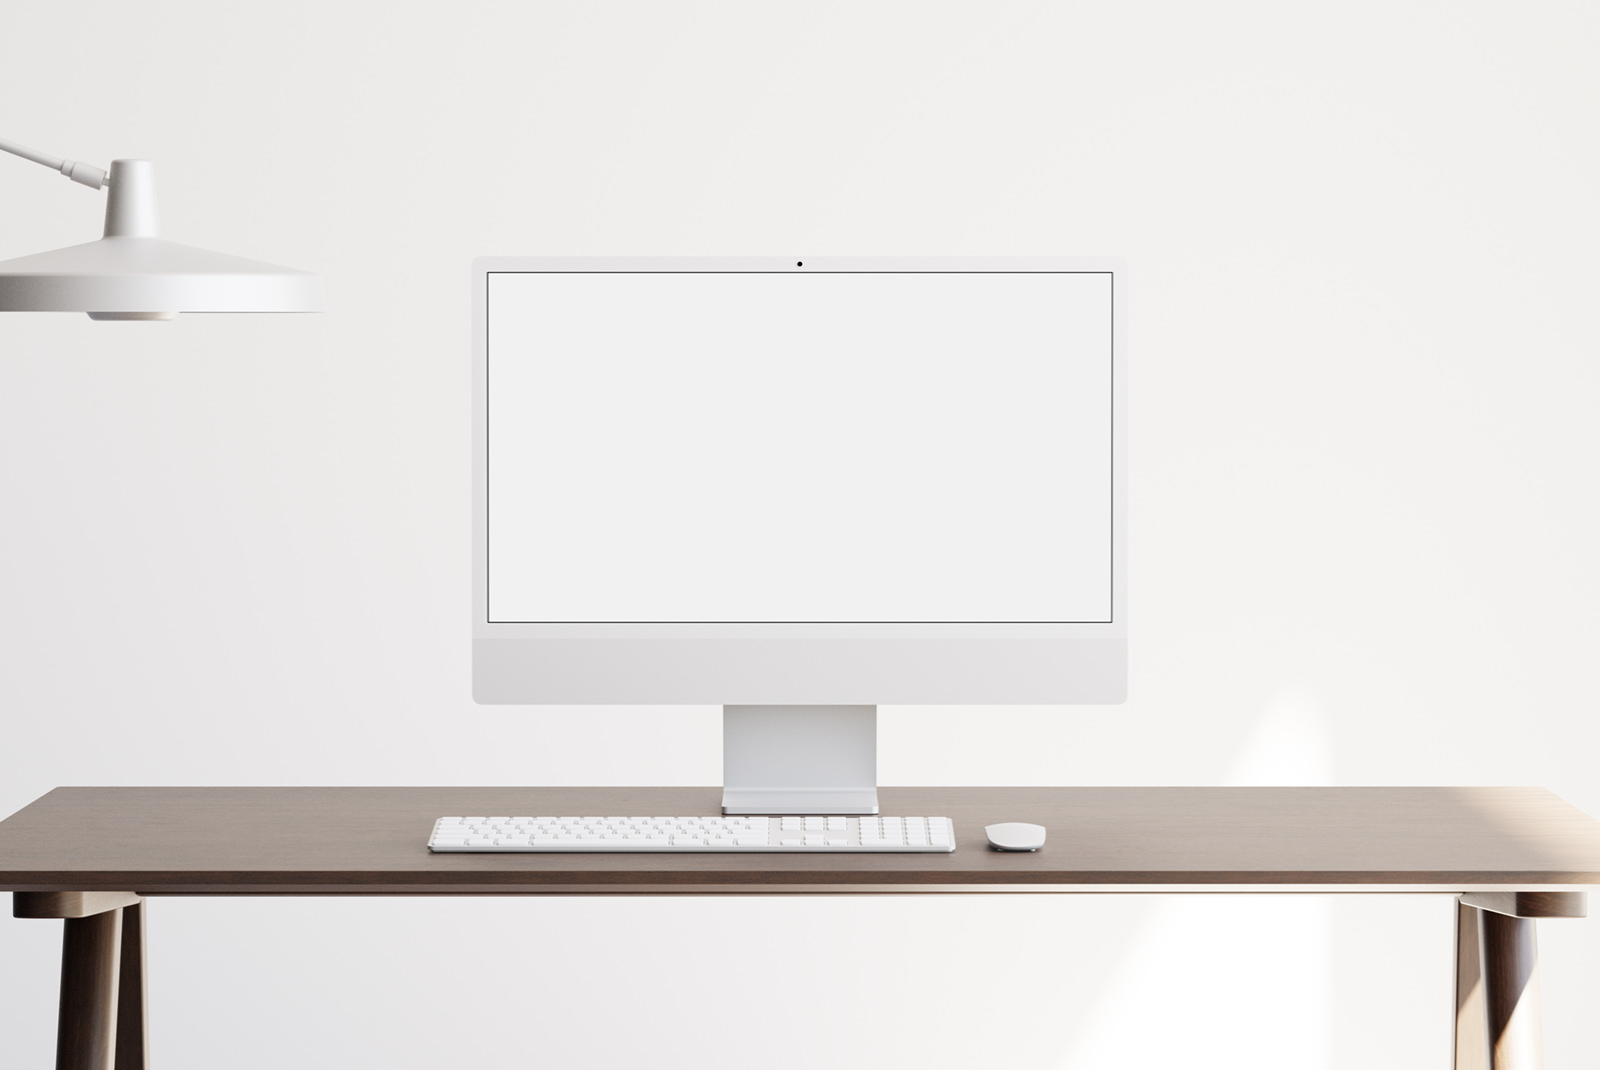 Minimalist workspace with computer mockup on desk, white modern design, clean desk setup for template design presentation.